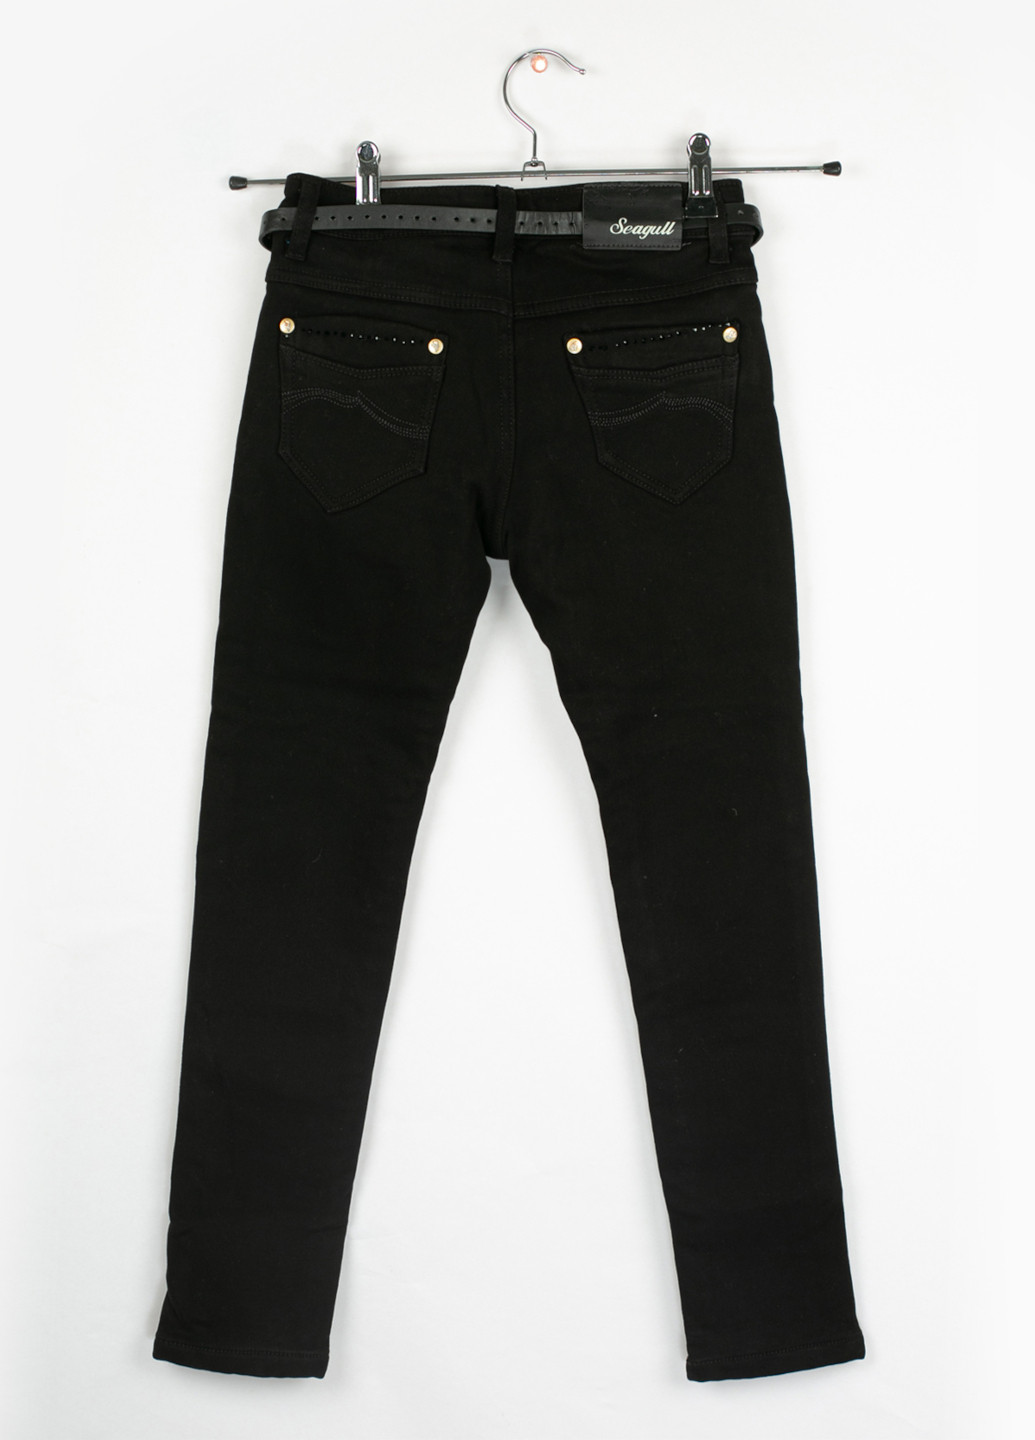 Черные зимние прямые джинсы для девочки утепленные Seagull